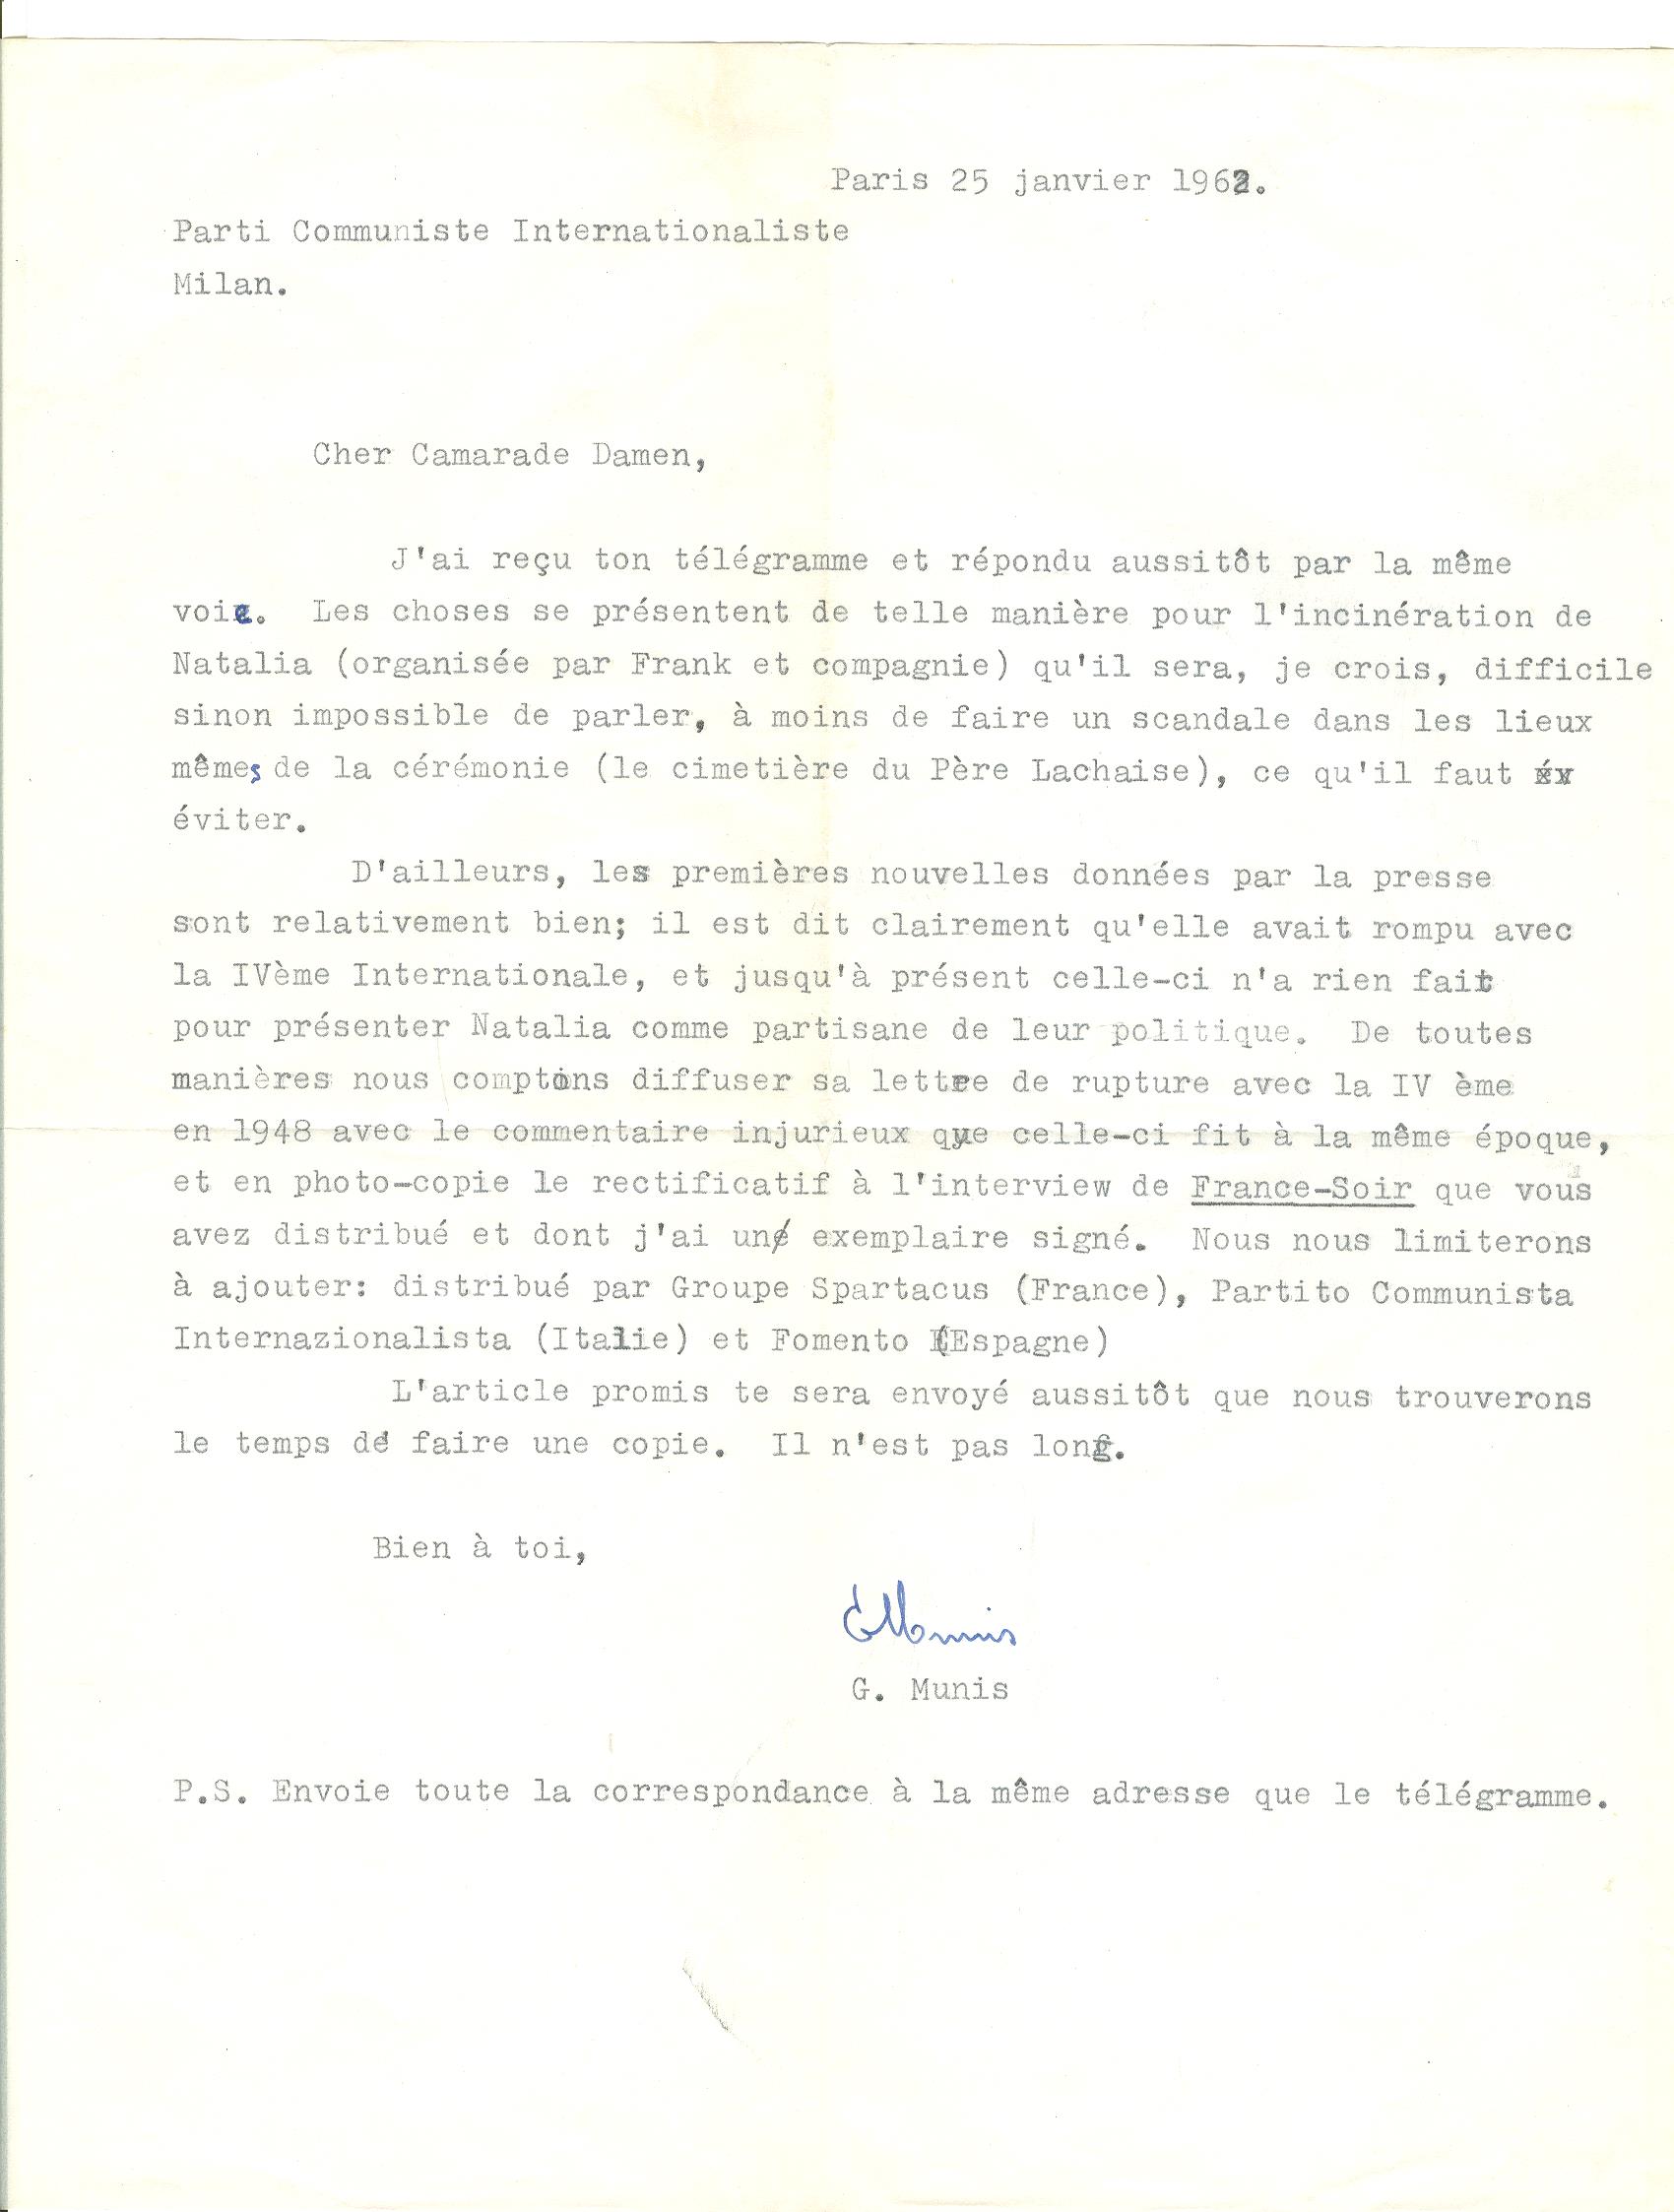 03 >> 2 - Lettera di Munis a Onorato Damen (25 gennaio 1962)